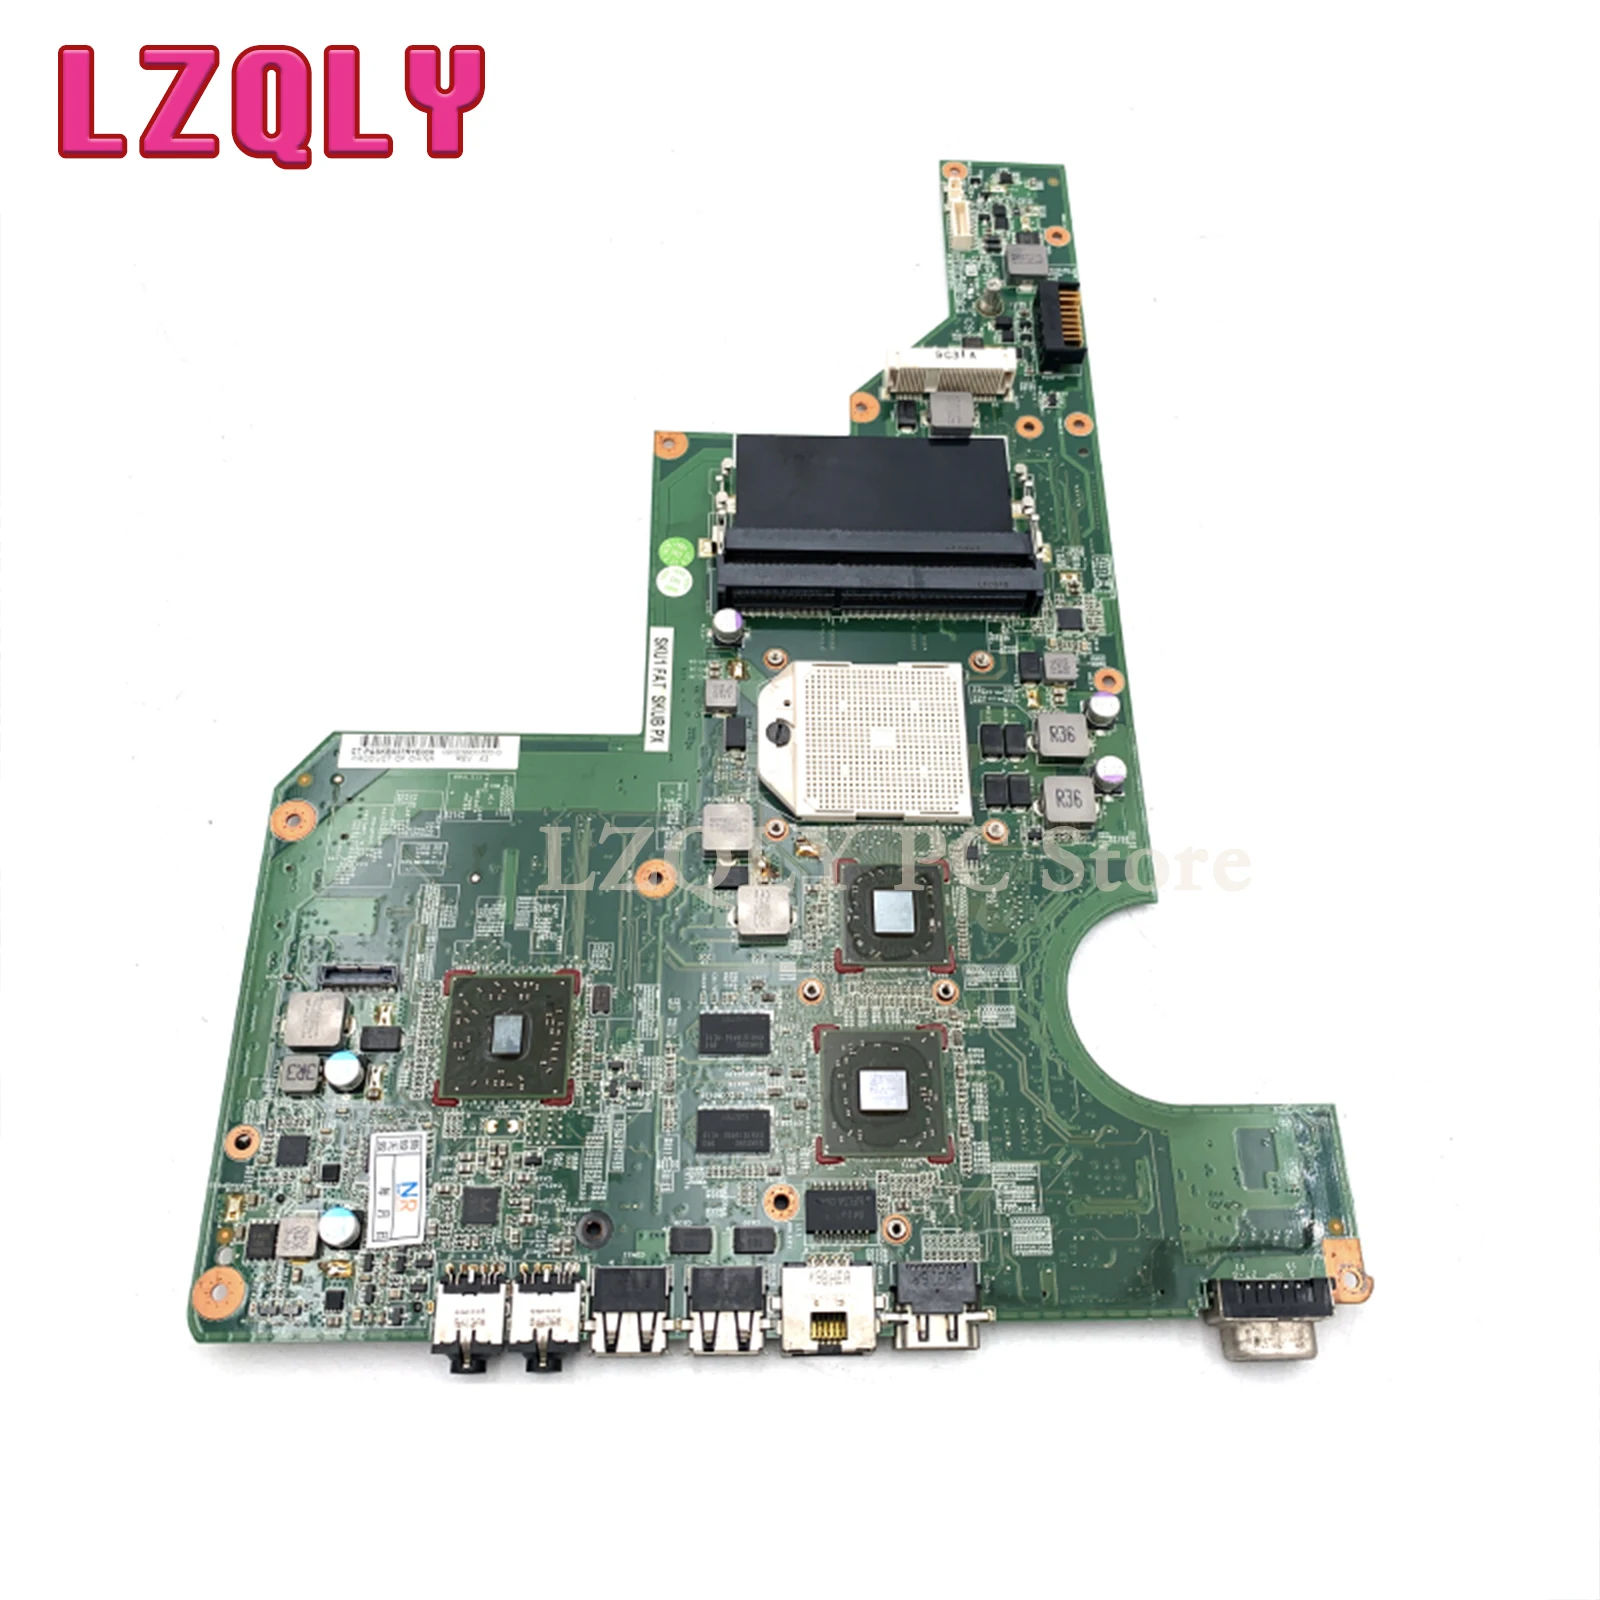 LZQLY 610160-001 597673-001 laptop placa Mãe Para o HP CQ62 G62 DDR3 livre CPU da placa Principal teste completo Imagem 2